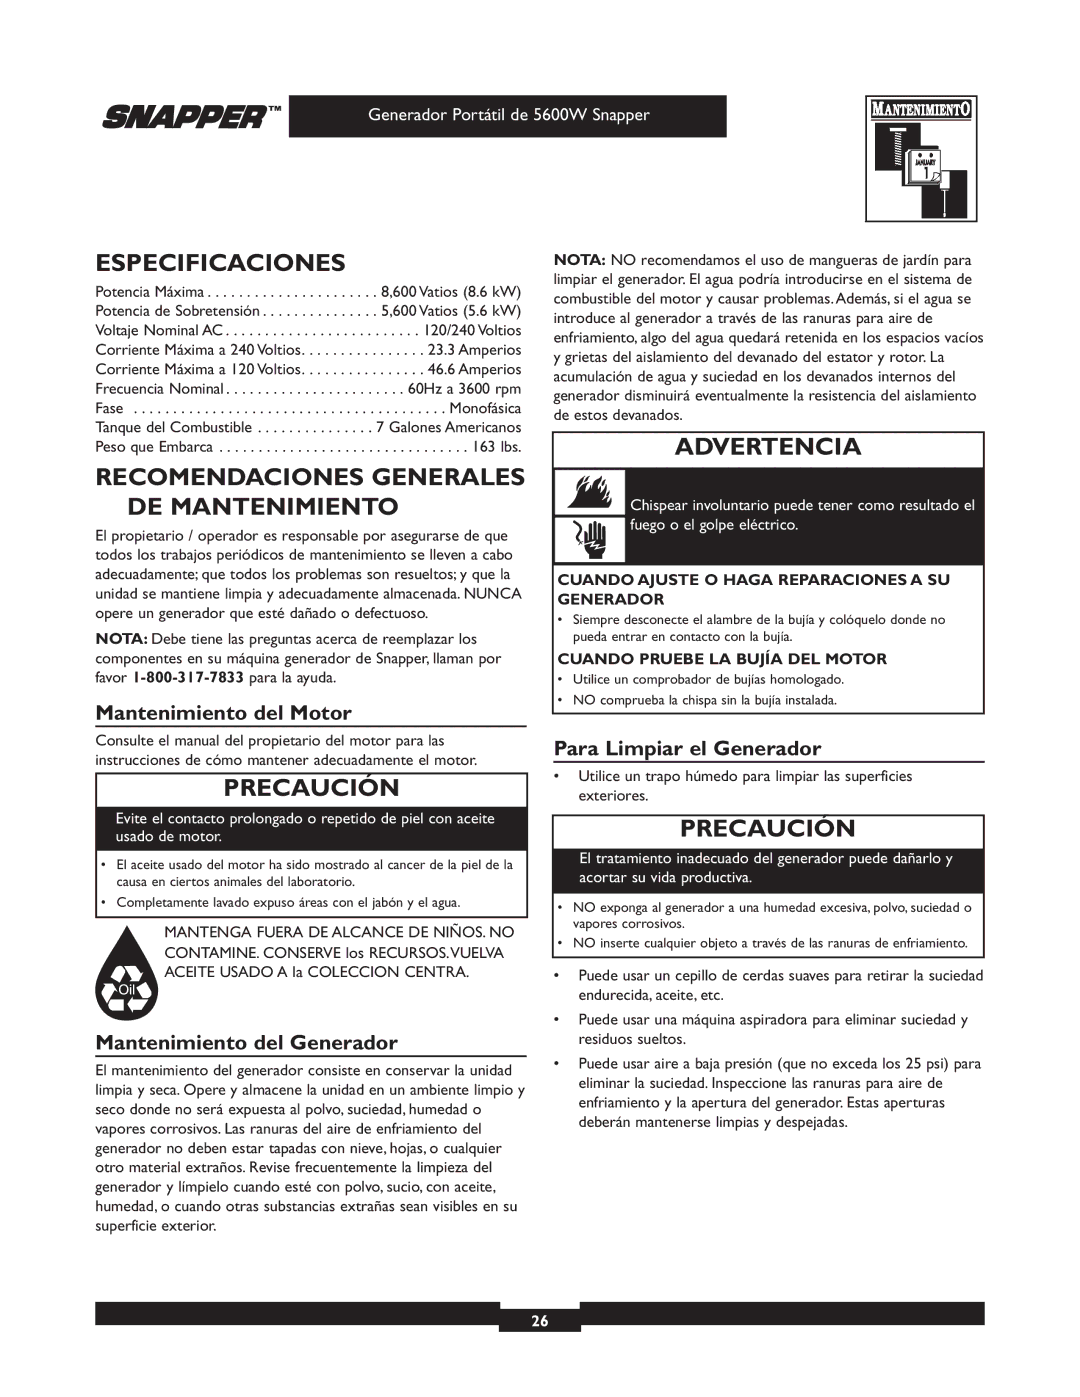 Snapper 30215 owner manual Especificaciones, Recomendaciones Generales DE Mantenimiento, Mantenimiento del Motor 